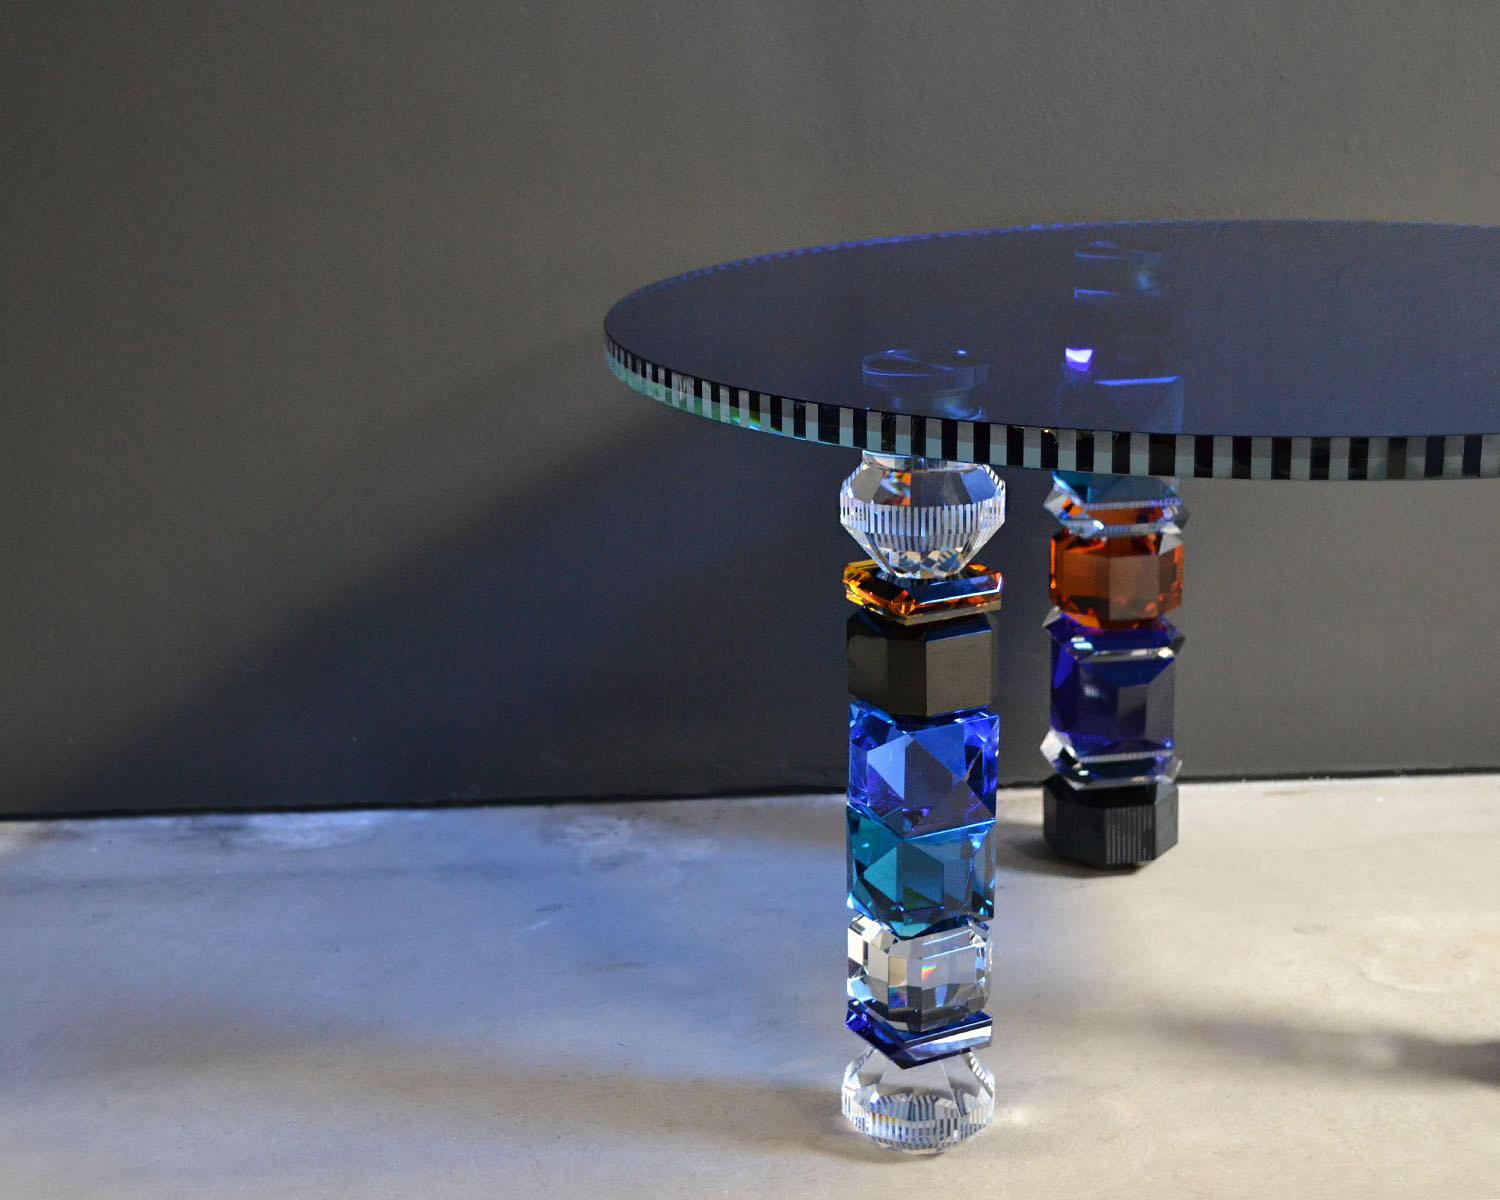 Mesa de cristal contemporánea Setroit esculpida a mano
Mesa de cristal
Decoración artesanal de cristal
Medidas: An 75 x Al 44 x Pr 75 cm
Esculpida a mano en cristal y vidrio

La mesa artesanal Detroit está diseñada para ser un mueble